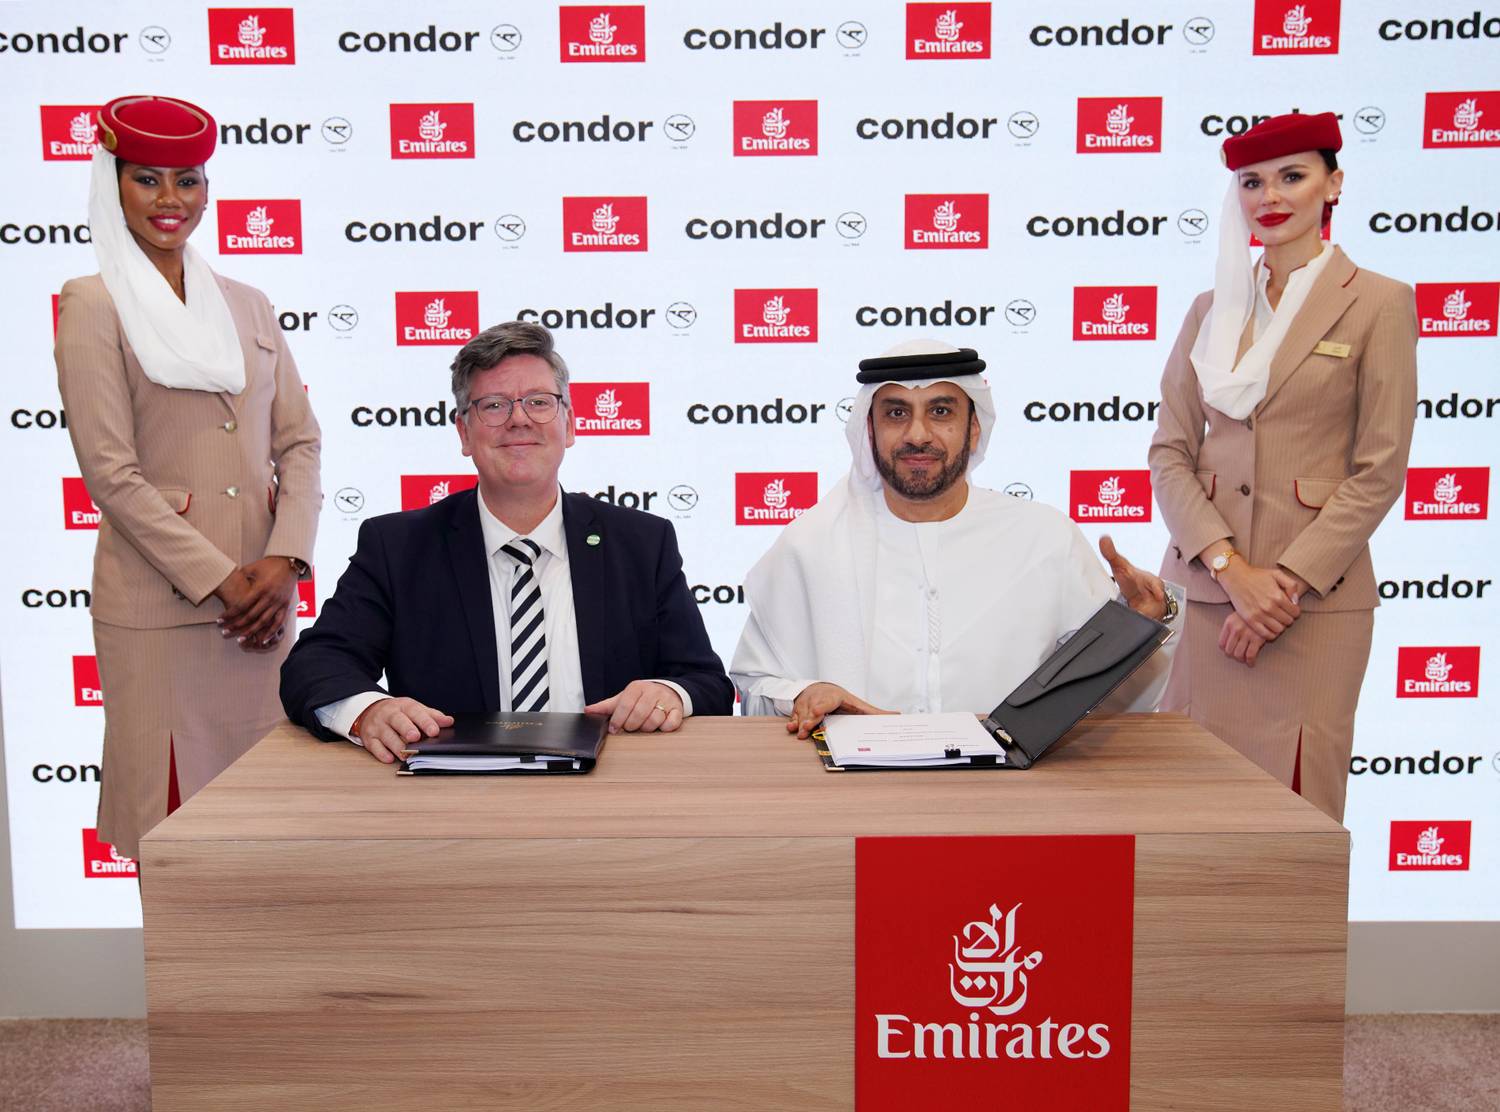 Emirates-Condor deal